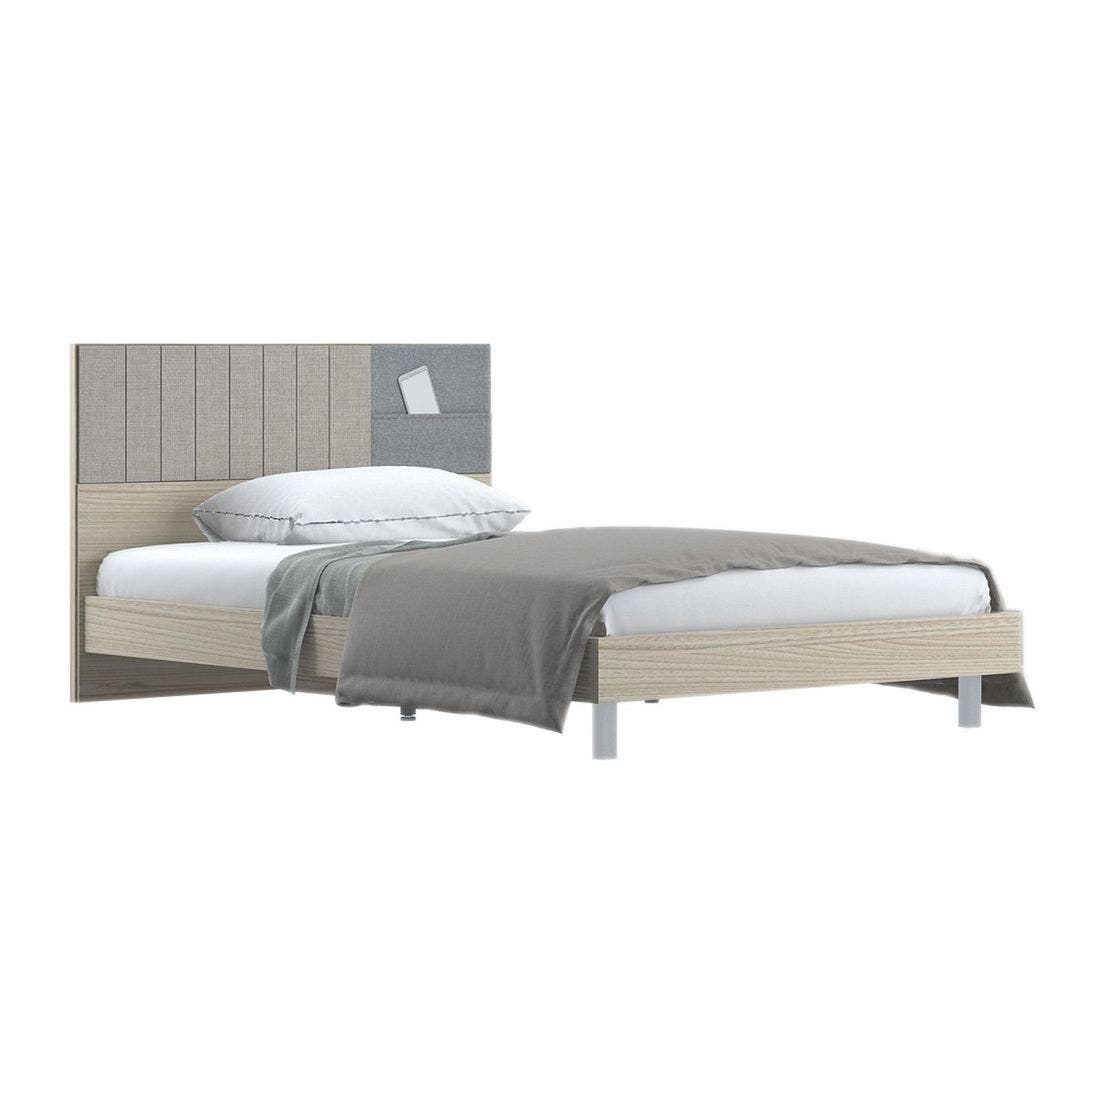 ชุดห้องนอน เตียง รุ่น Econi สีสีโอ๊คอ่อน-SB Design Square